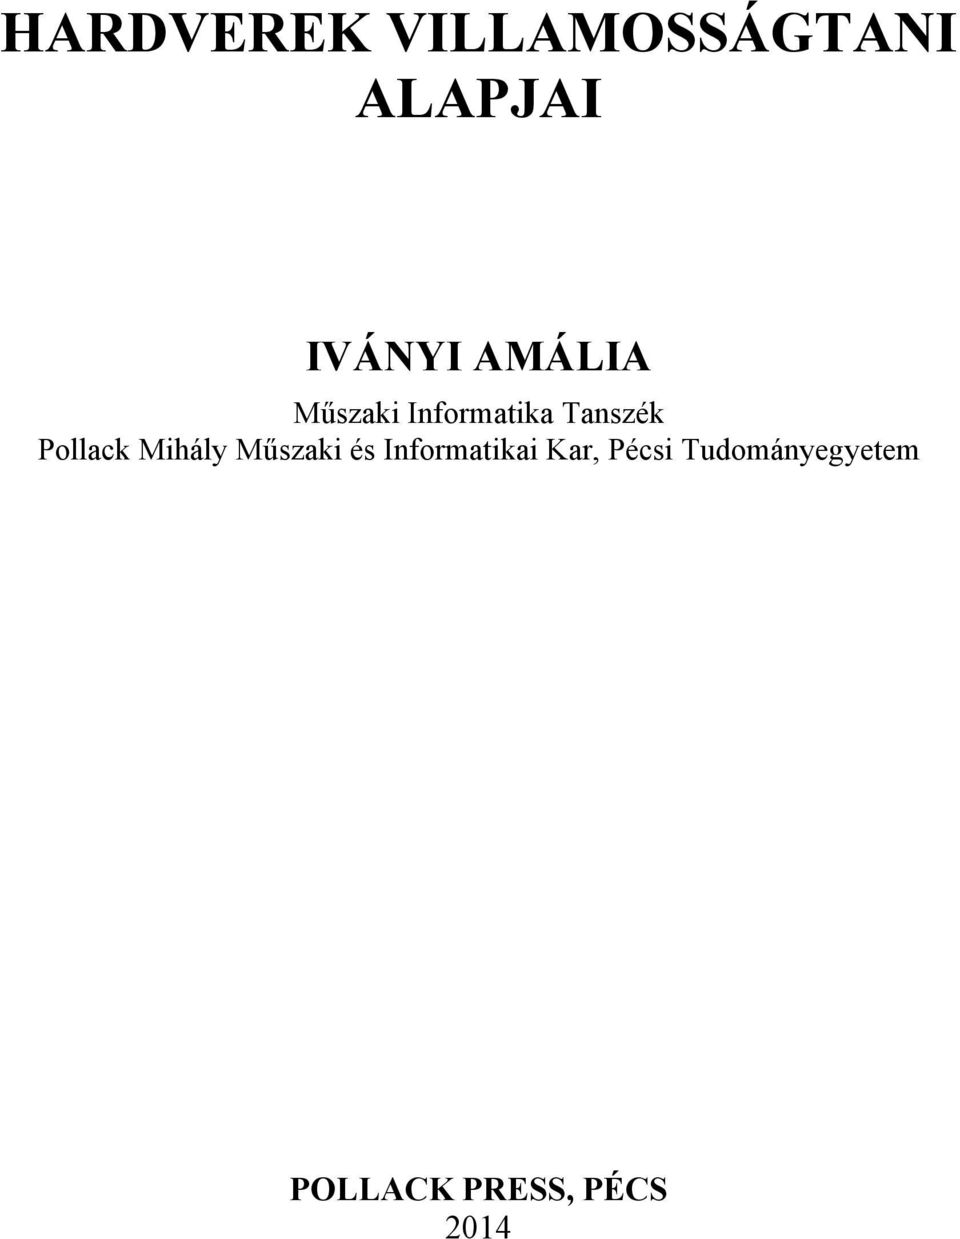 Pollack Mihály Műszaki és Infomatikai